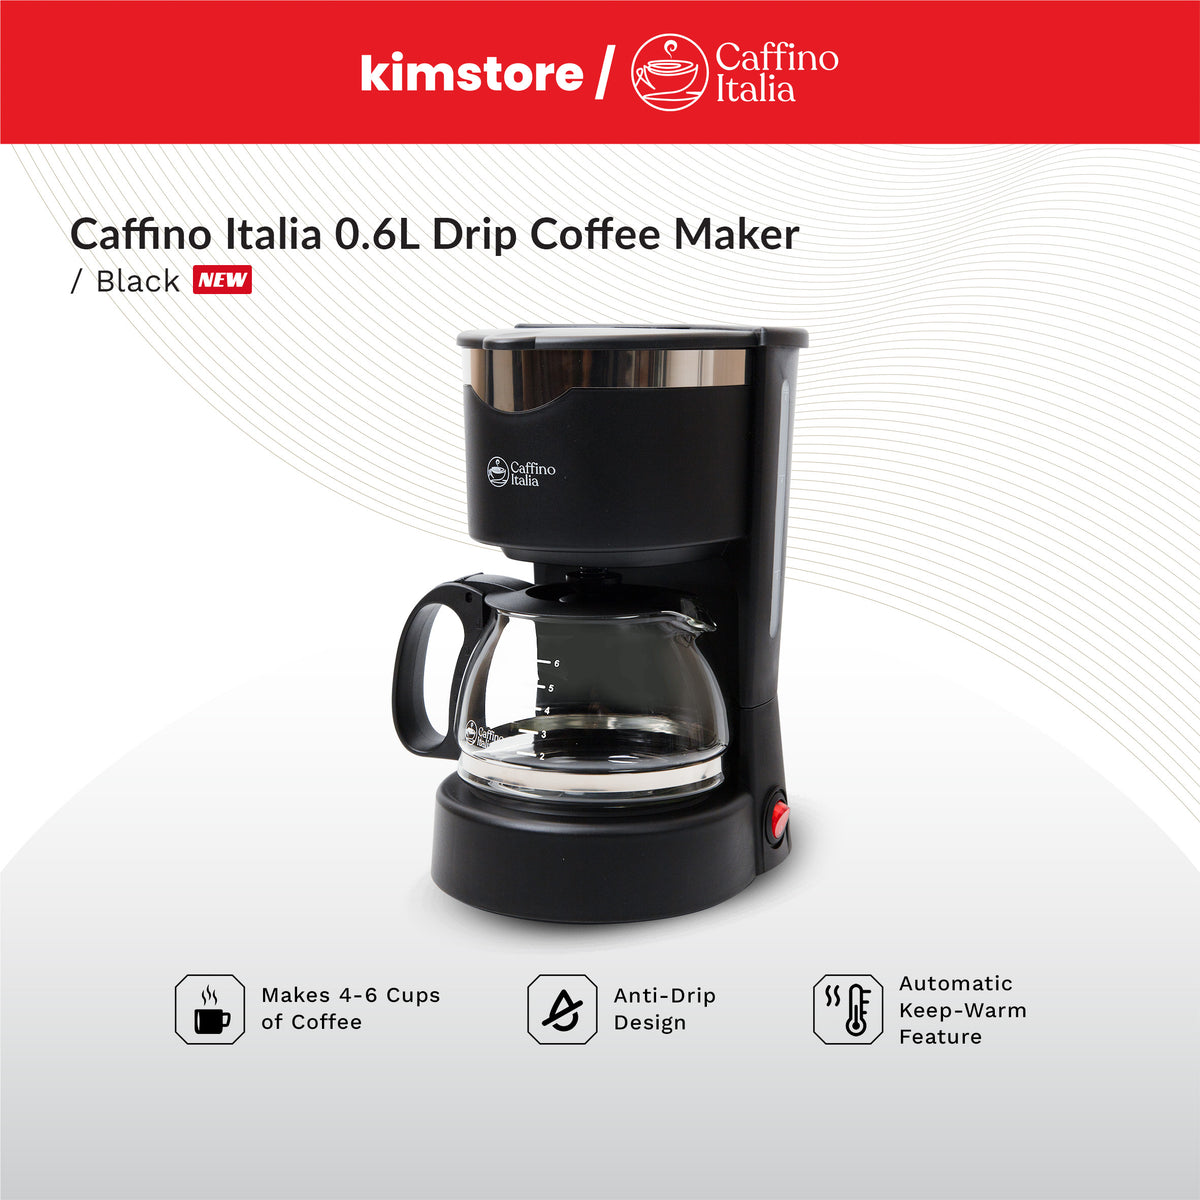 Caffino Italia 0.6L Drip Coffee Maker